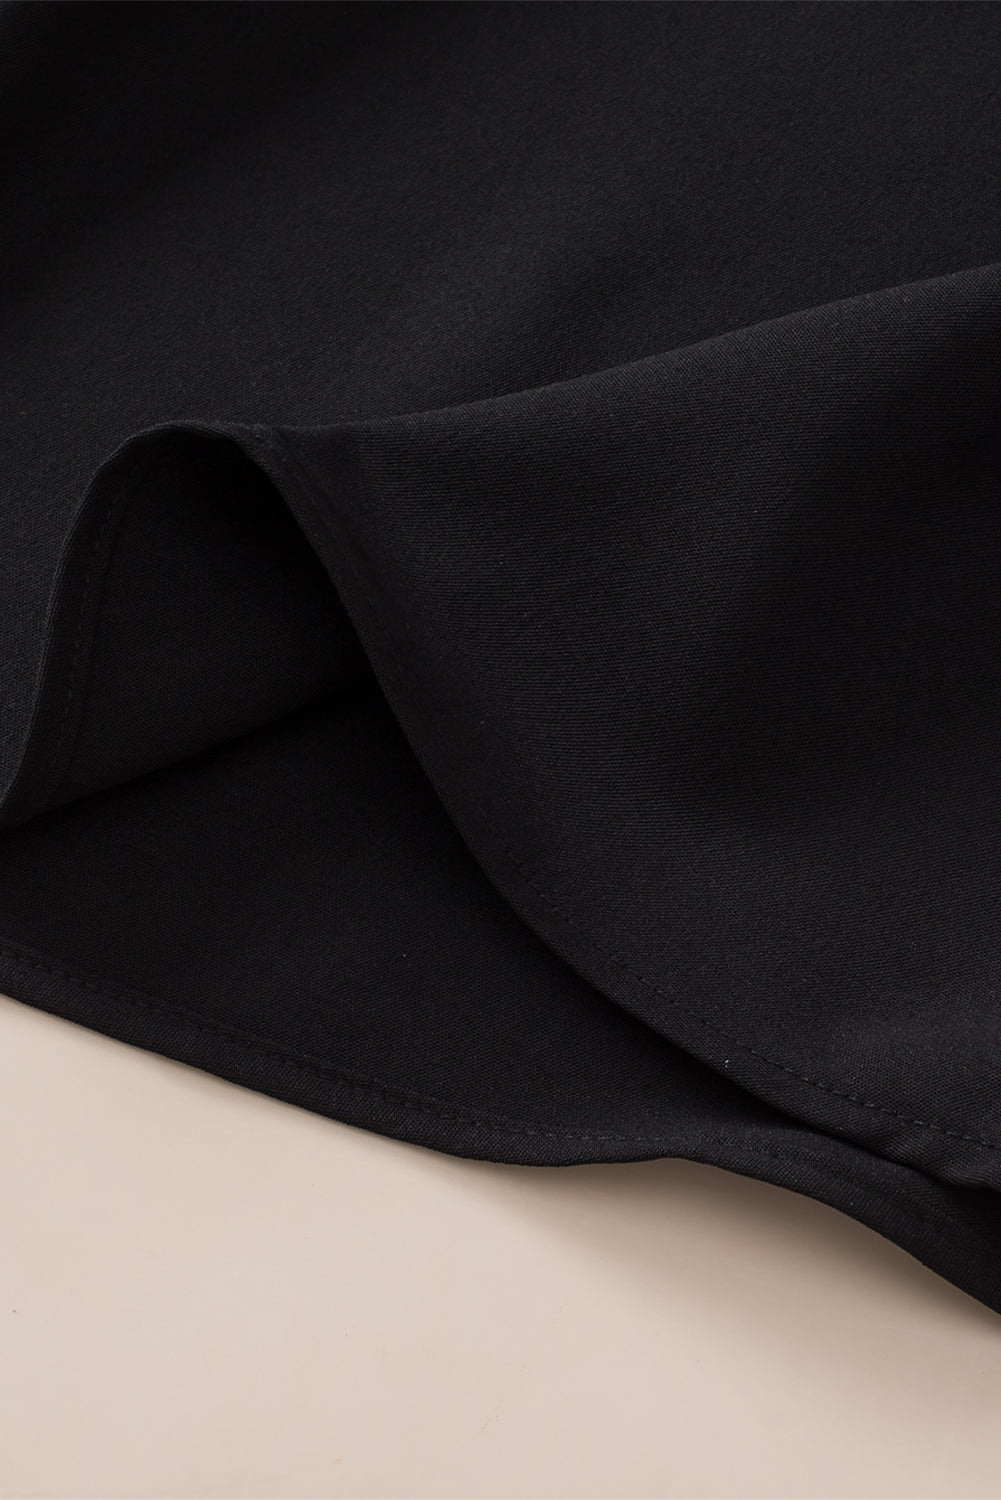 Tunique noire sans manches en patchwork de crochet bohème